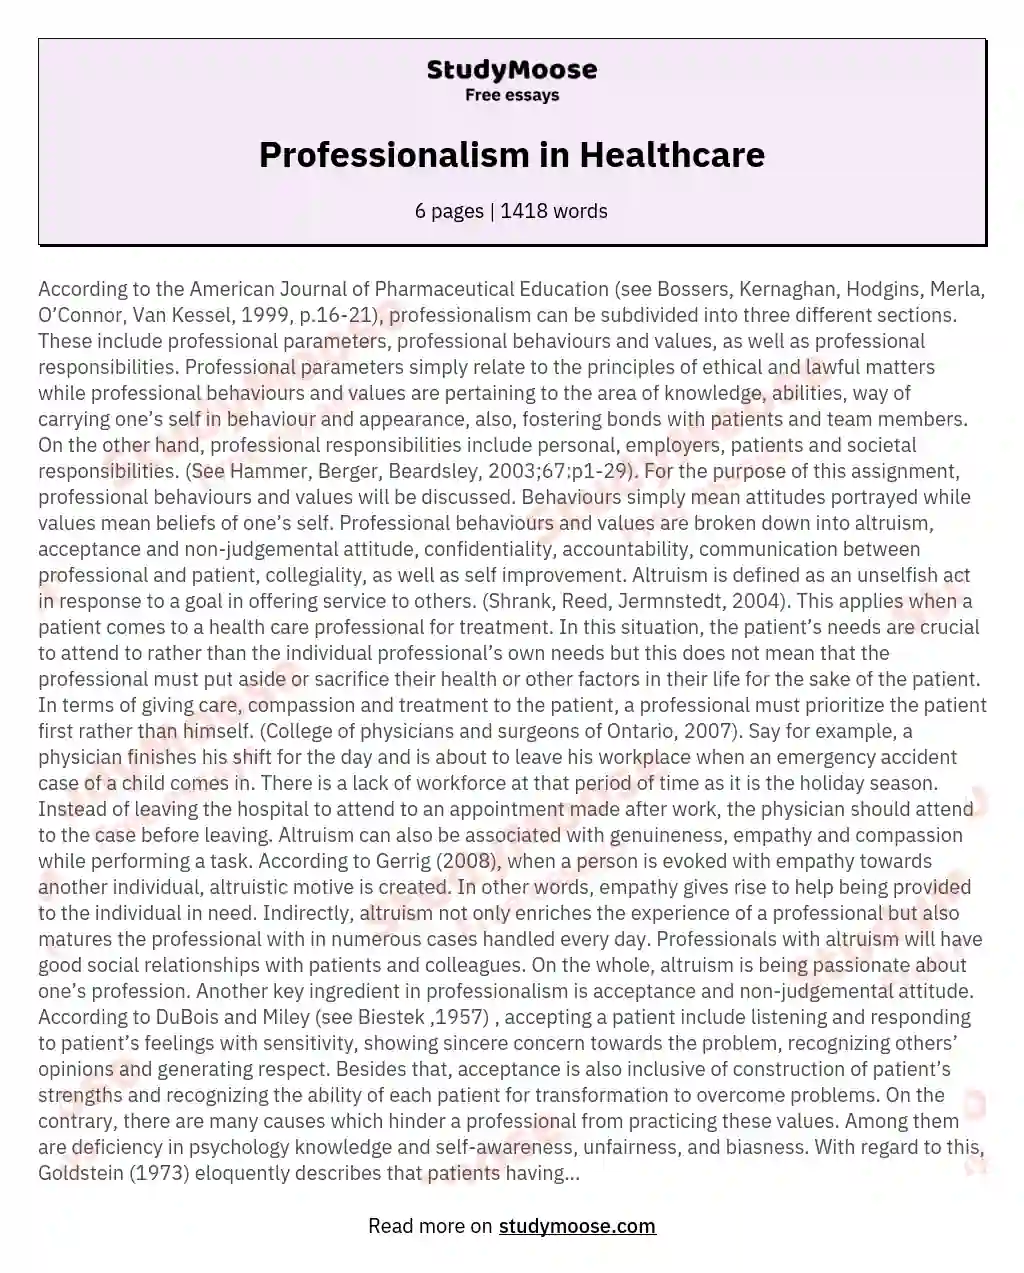 Professionalism in Healthcare essay